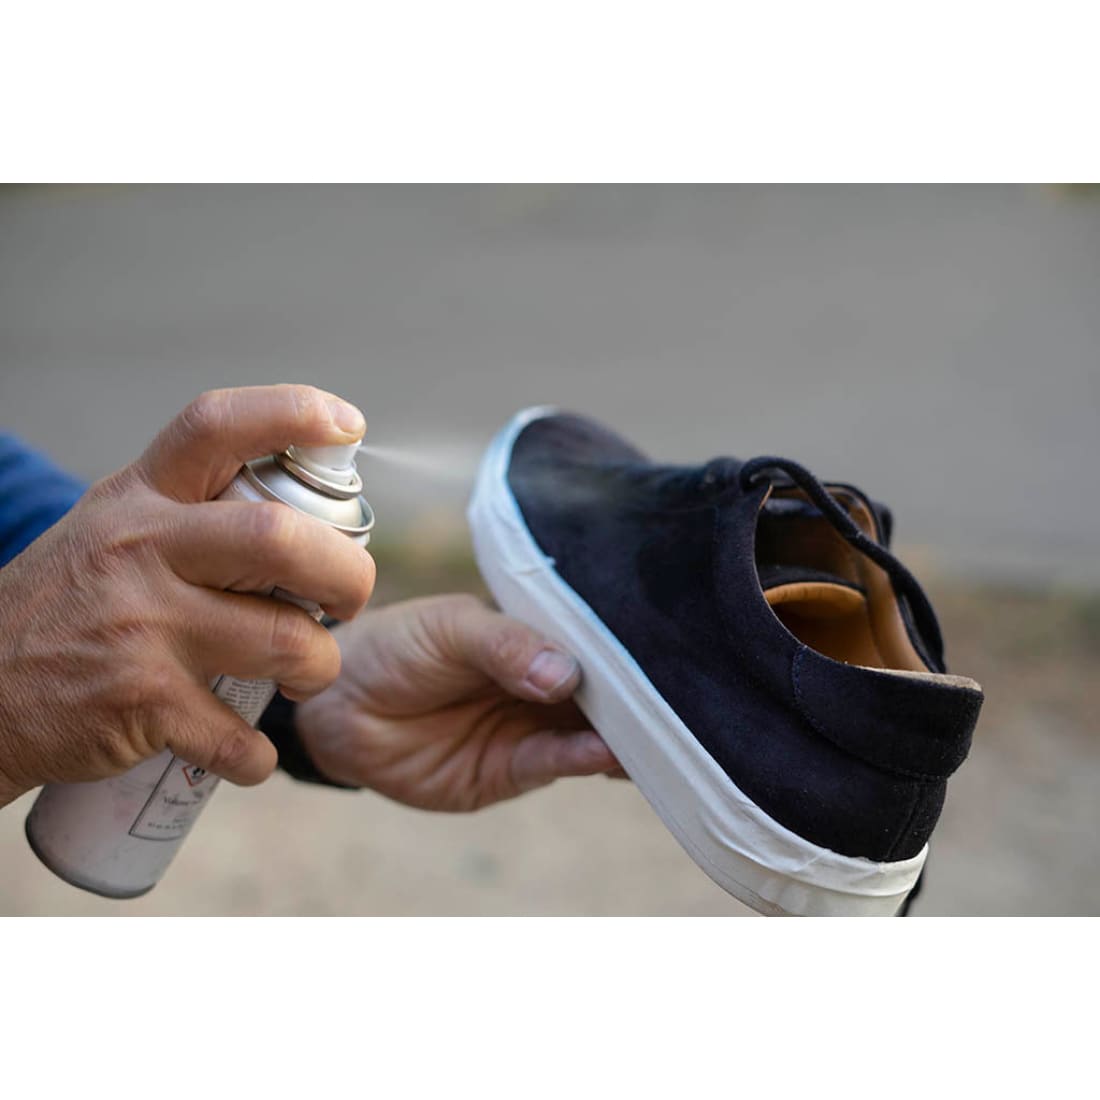 Impermeabilisant anti-taches pour vos sneakers